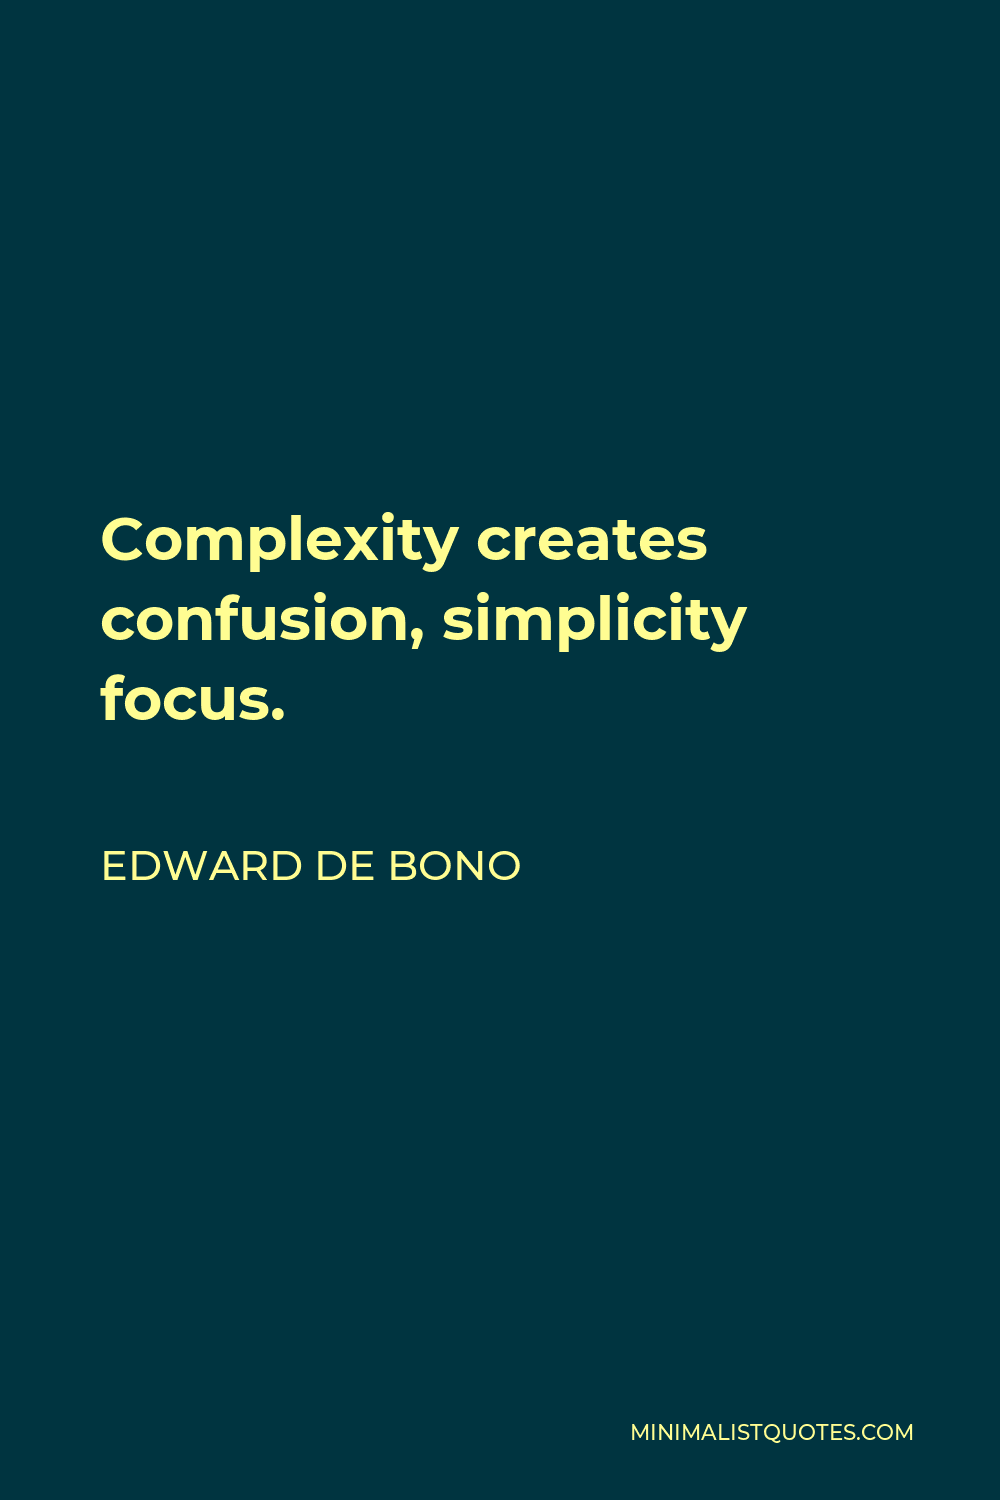 Edward de Bono Quote - Complexity creates confusion, simplicity focus.